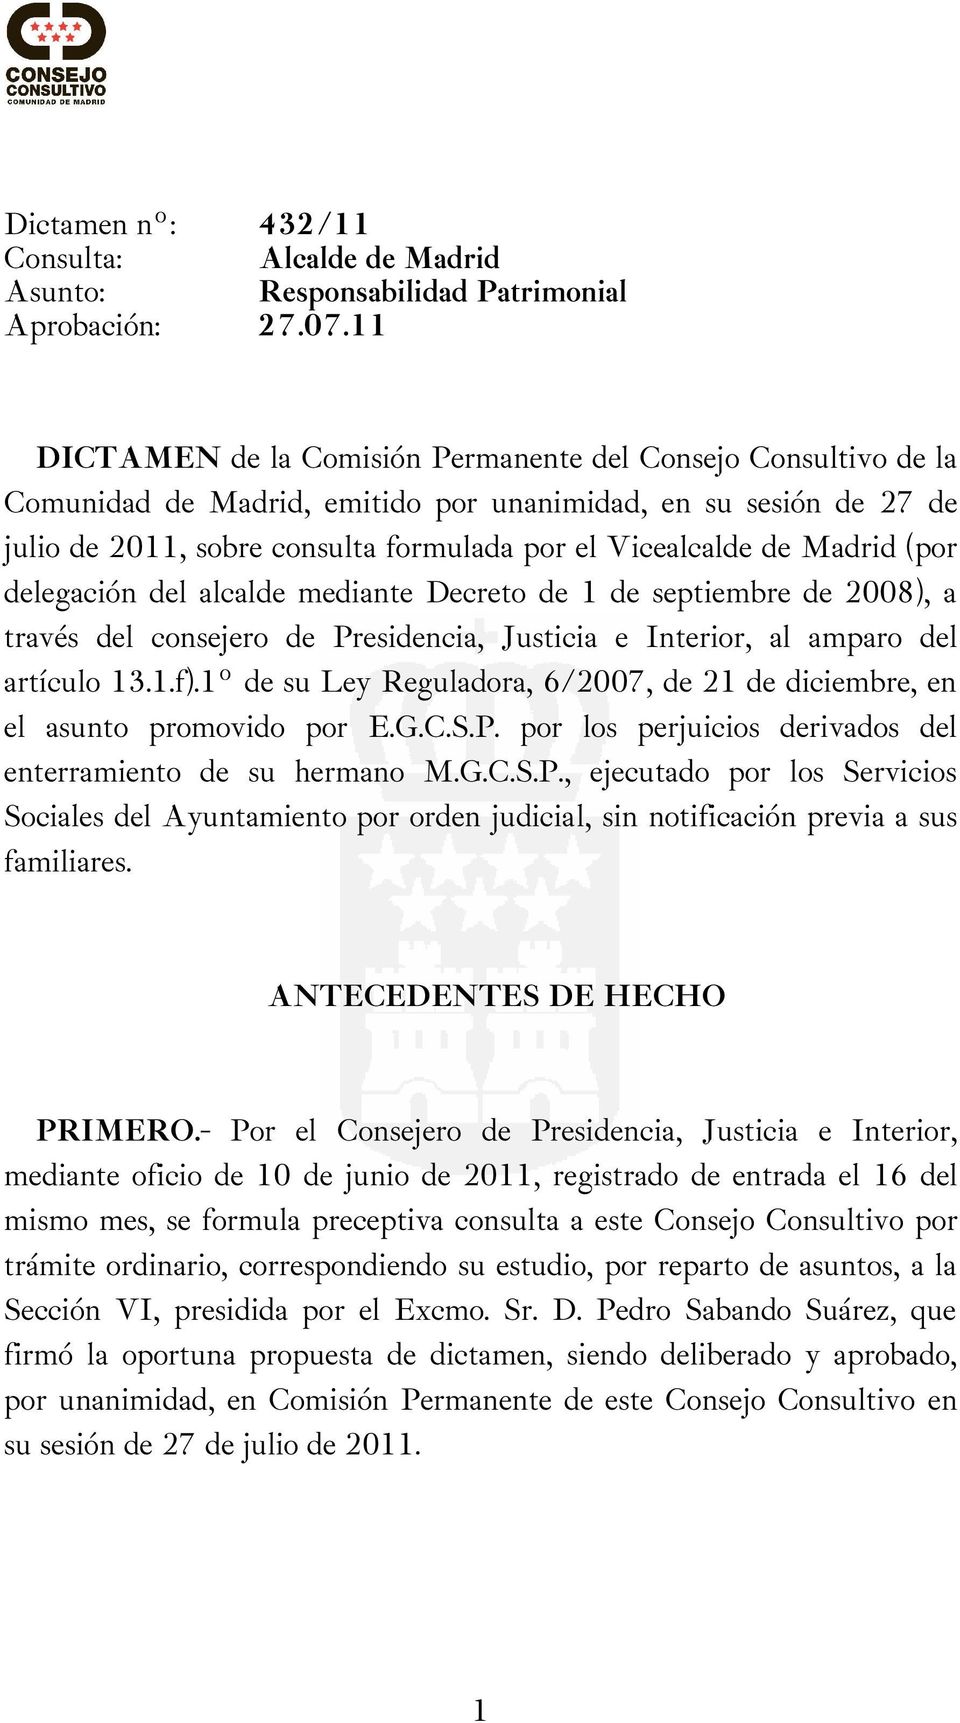 Madrid (por delegación del alcalde mediante Decreto de 1 de septiembre de 2008), a través del consejero de Presidencia, Justicia e Interior, al amparo del artículo 13.1.f).